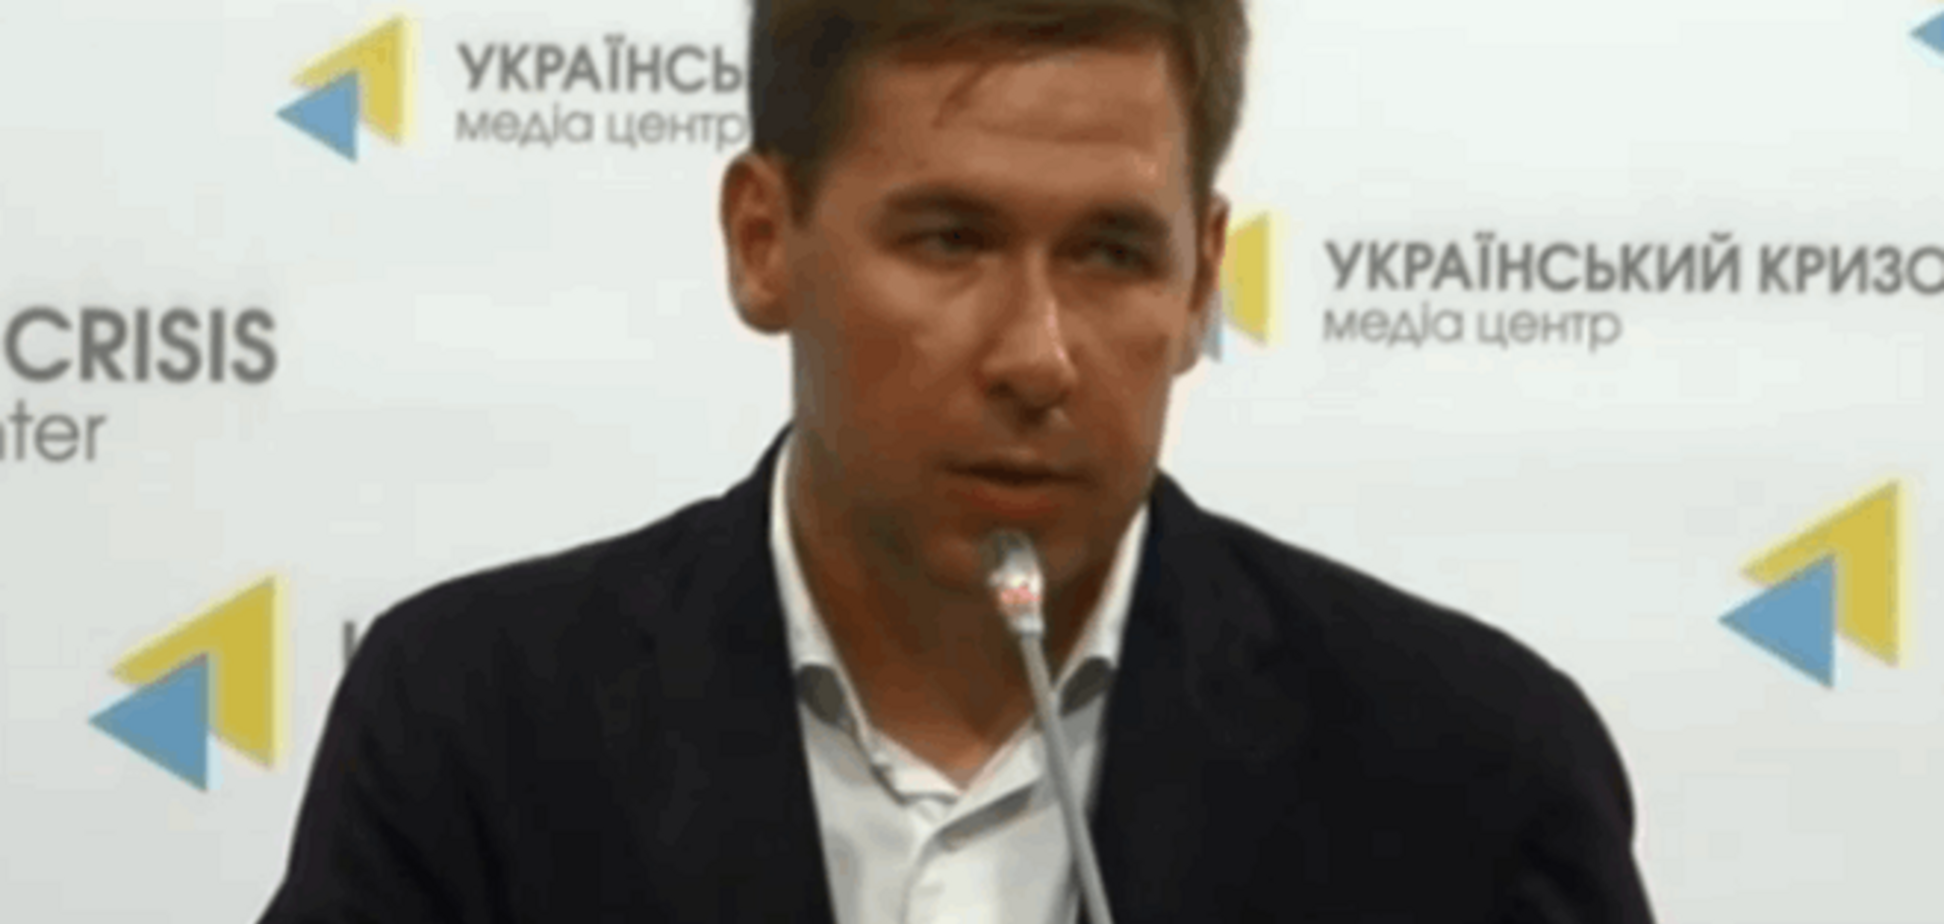 Адвокат Савченко анонсував нову інформацію від ГПУ, яка дасть 'позитивне зрушення'